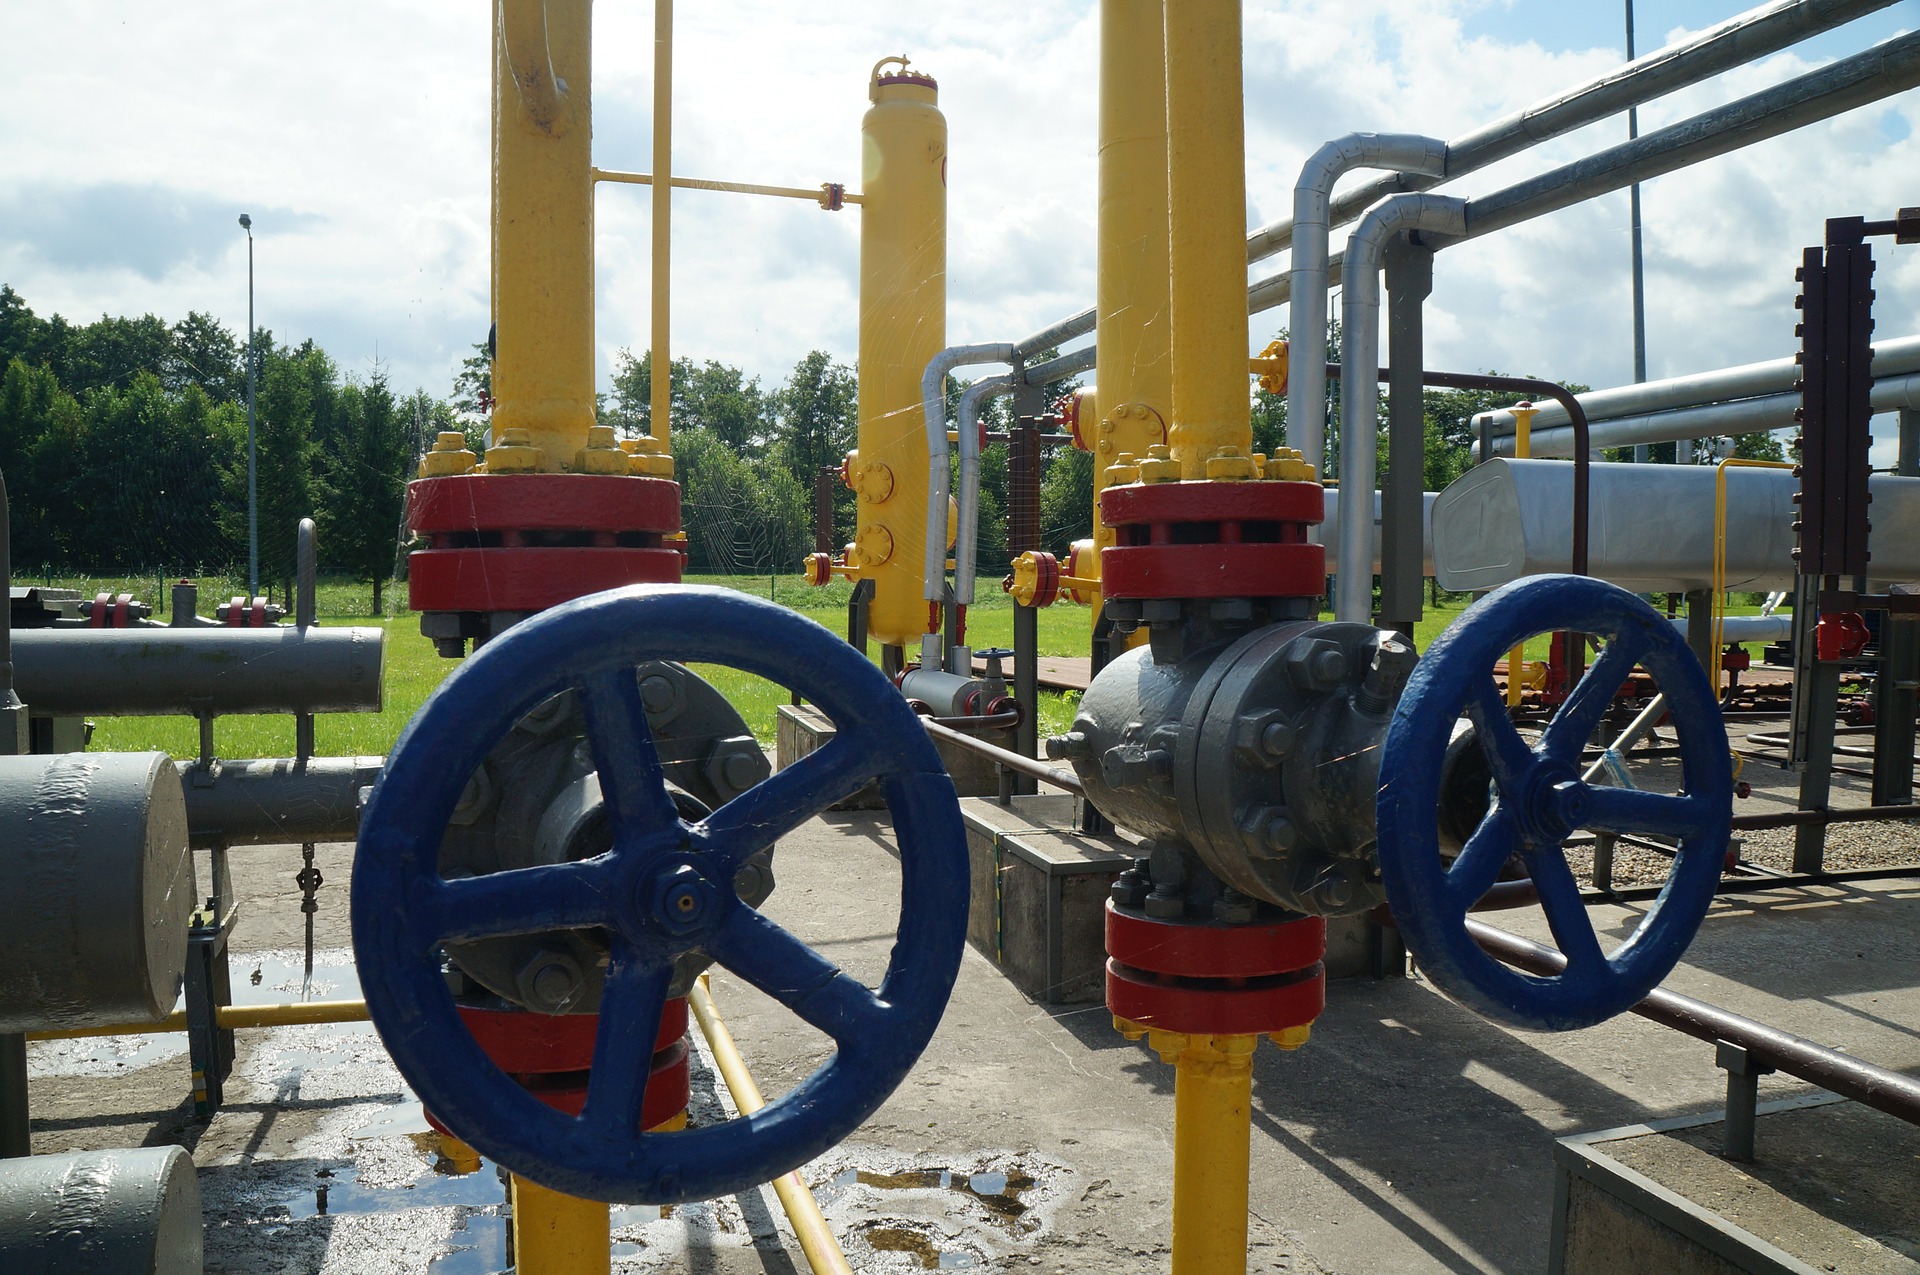 Gaspreisbremse: Wegen Standortauflagen drohen Verunsicherung und Frust